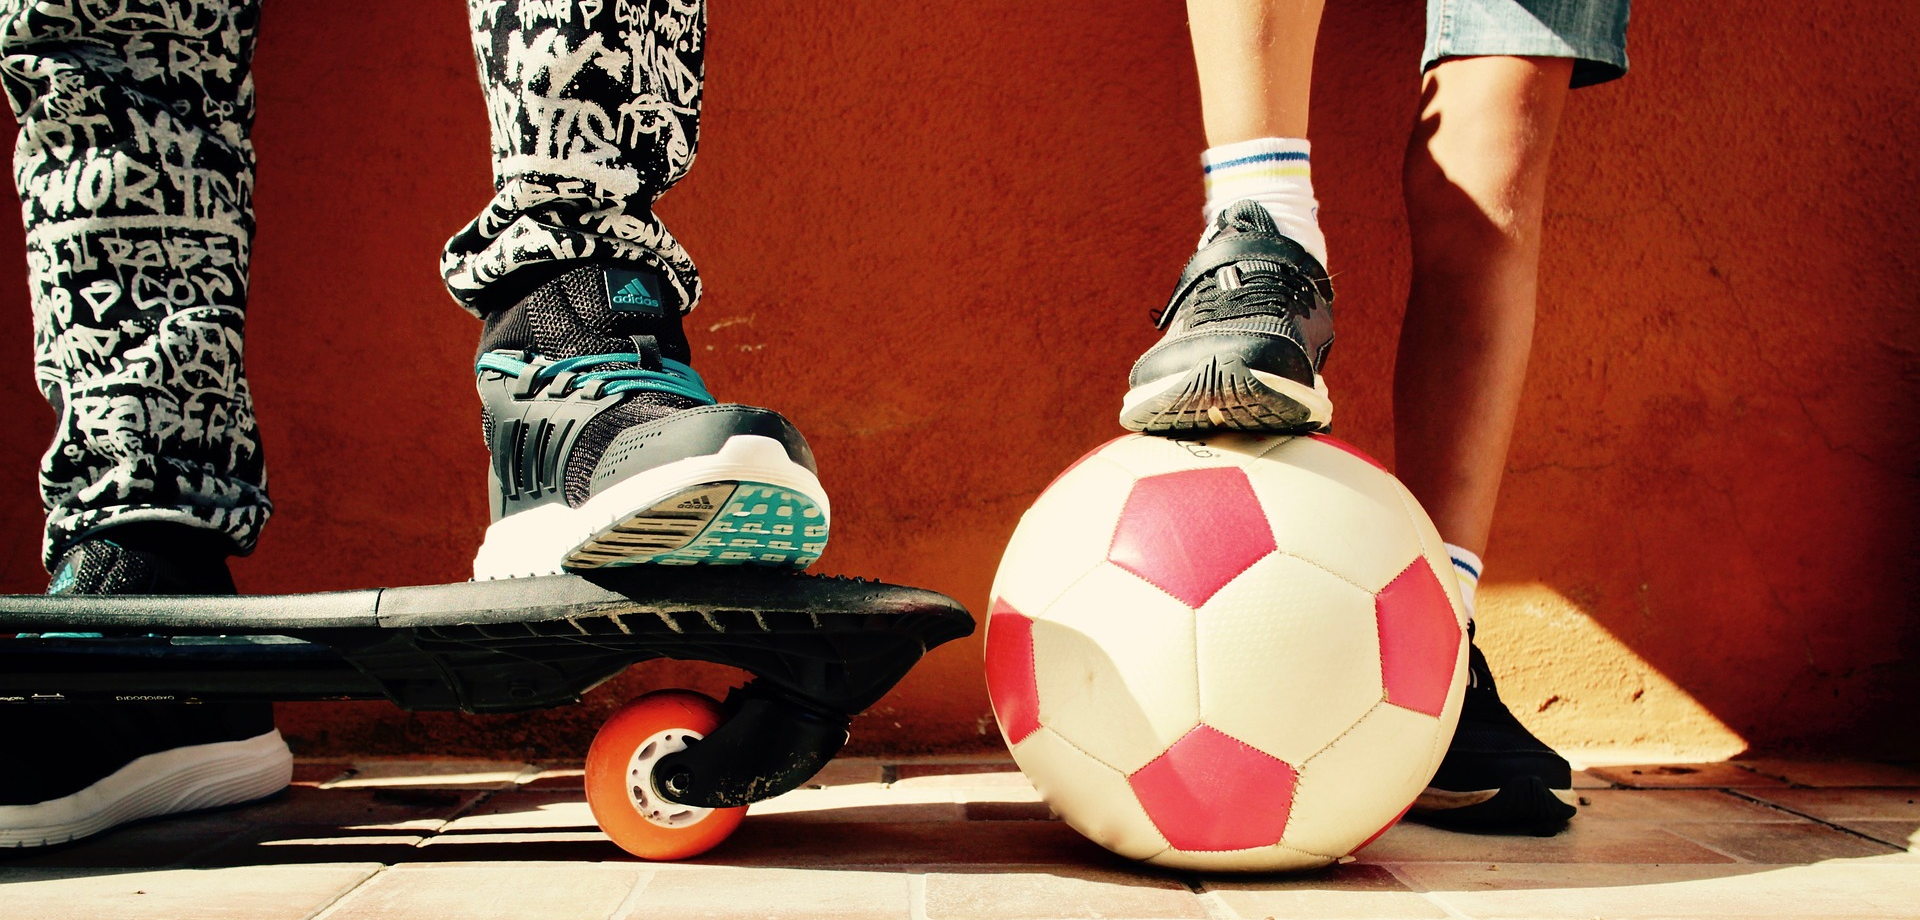 Zwei Jugendliche (man sieht nur ihre Beine) stehen nebeneinander, mit einem Ball und einem Skatebord.